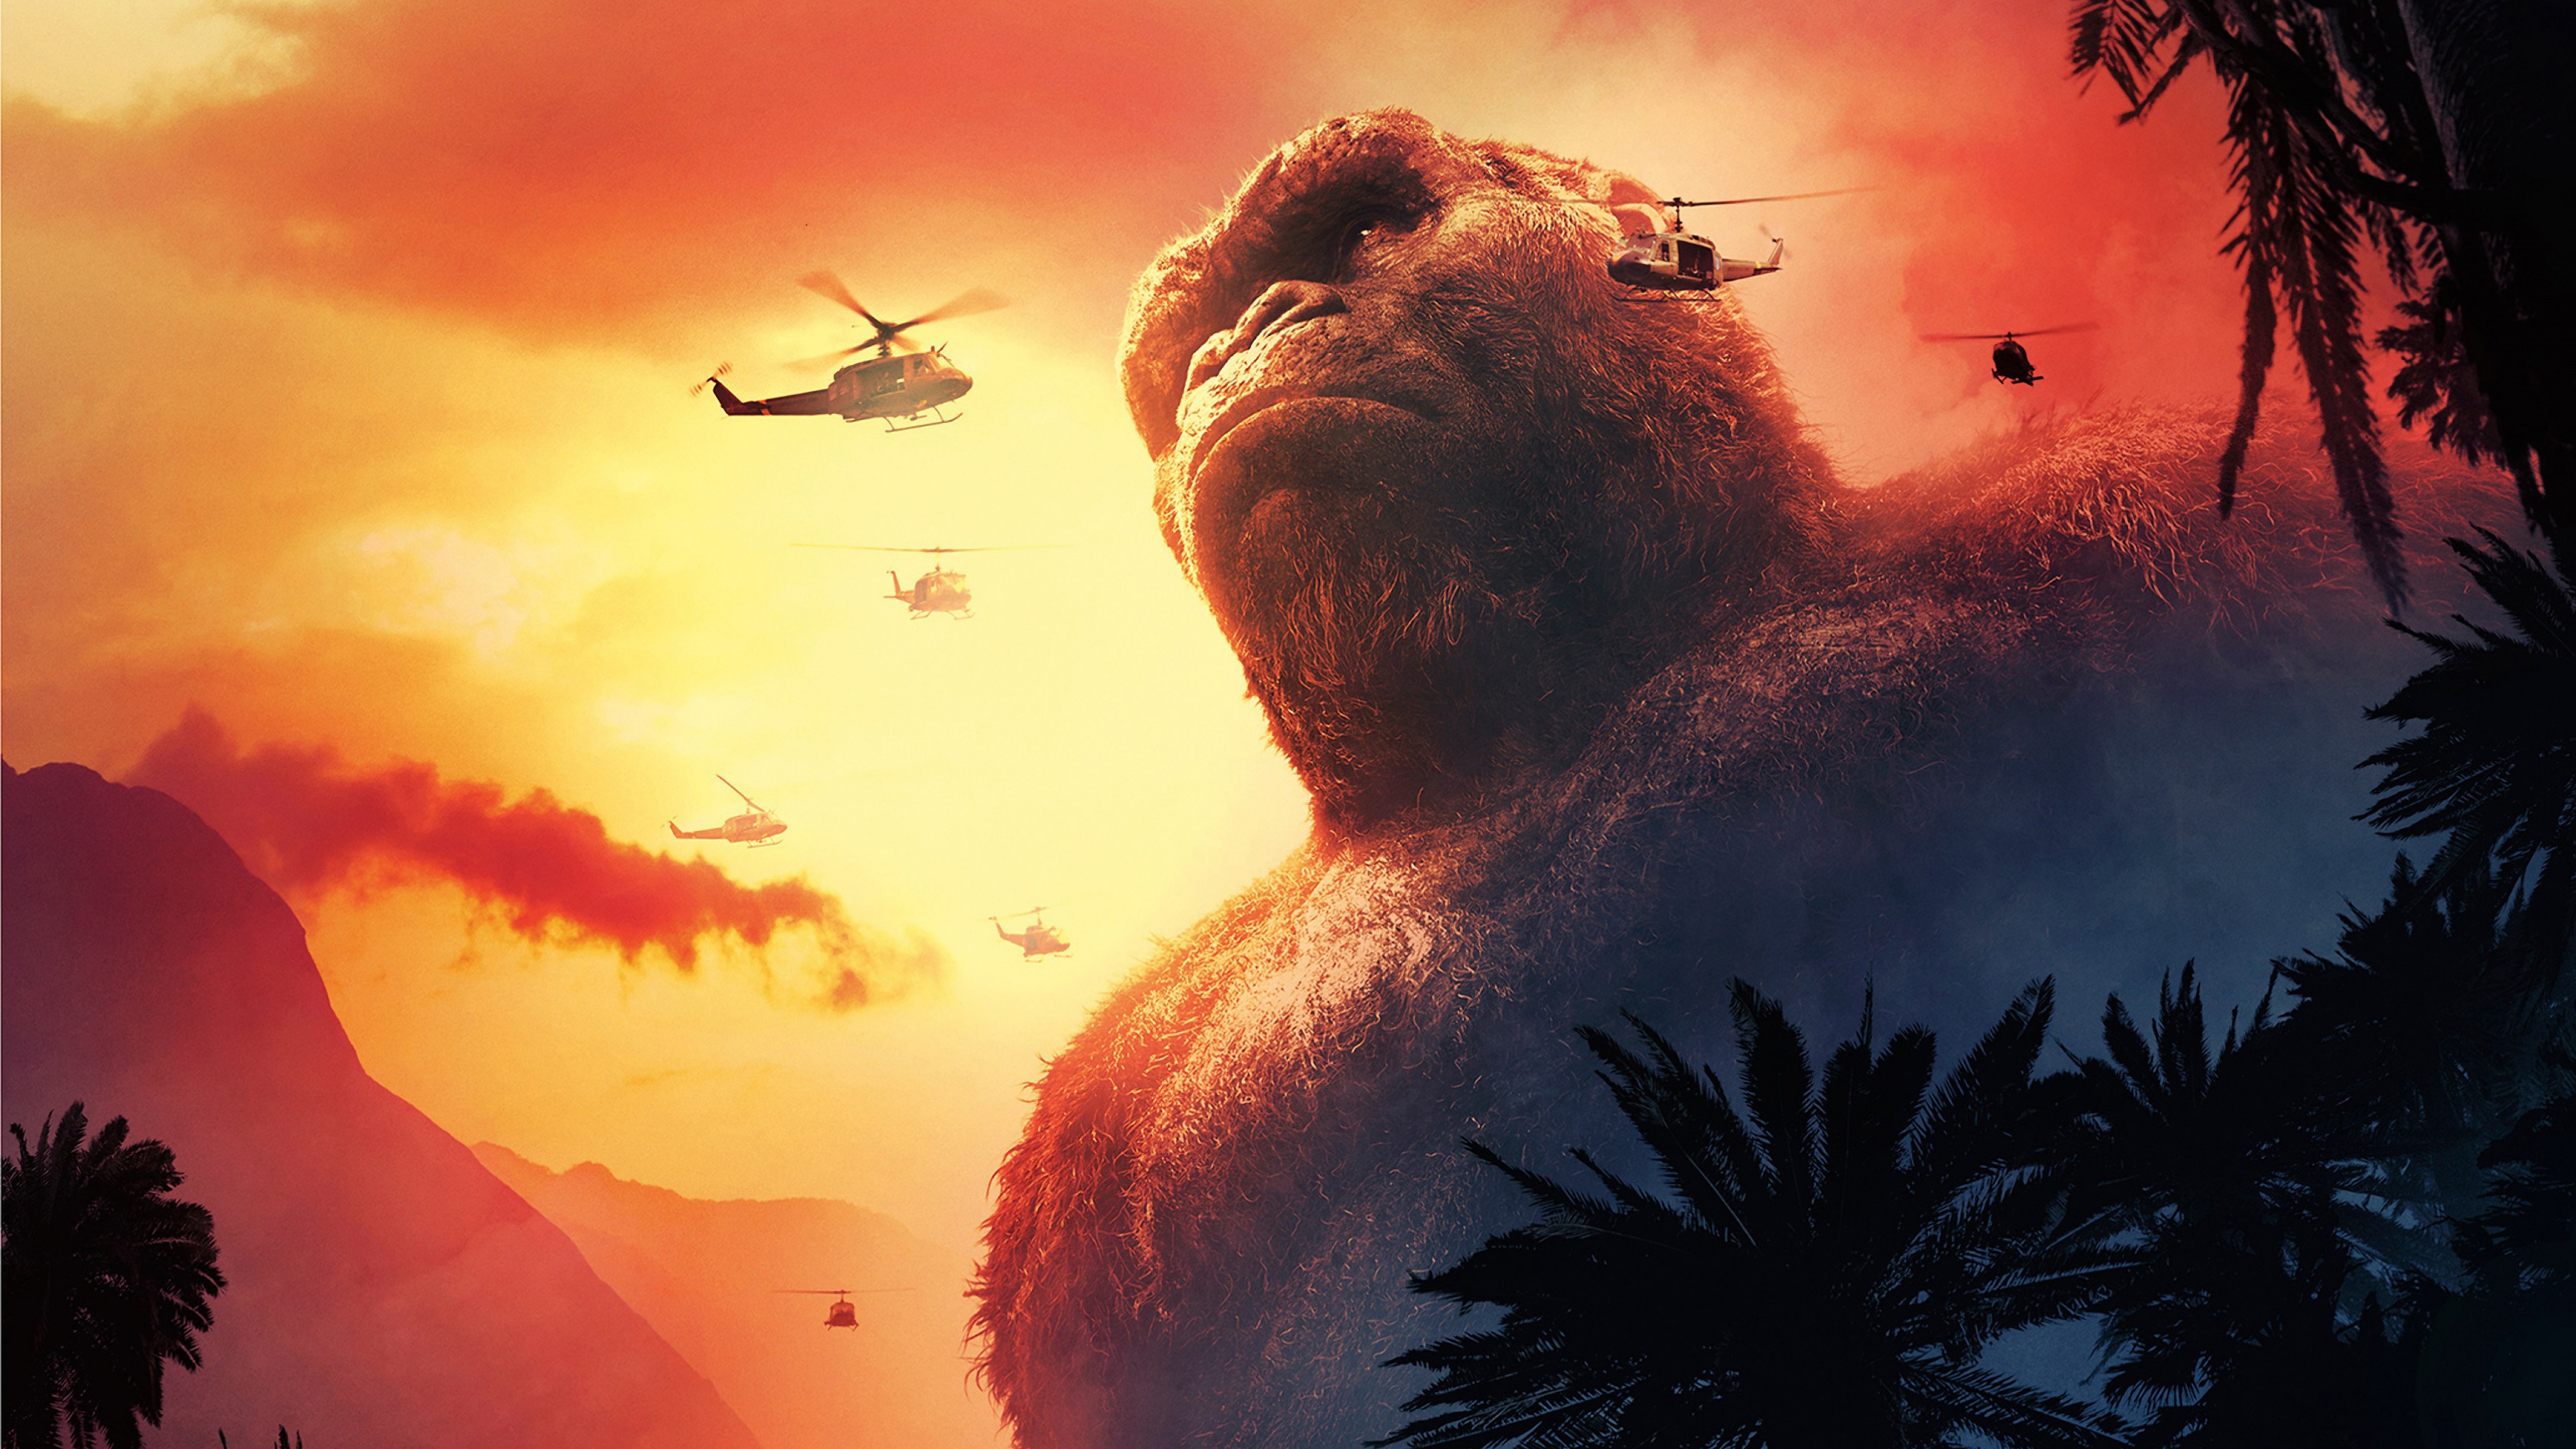 Bom tấn Godzilla Vs Kong đạt 11 tỉ đồng sau 1 ngày chiếu có vượt Bố già